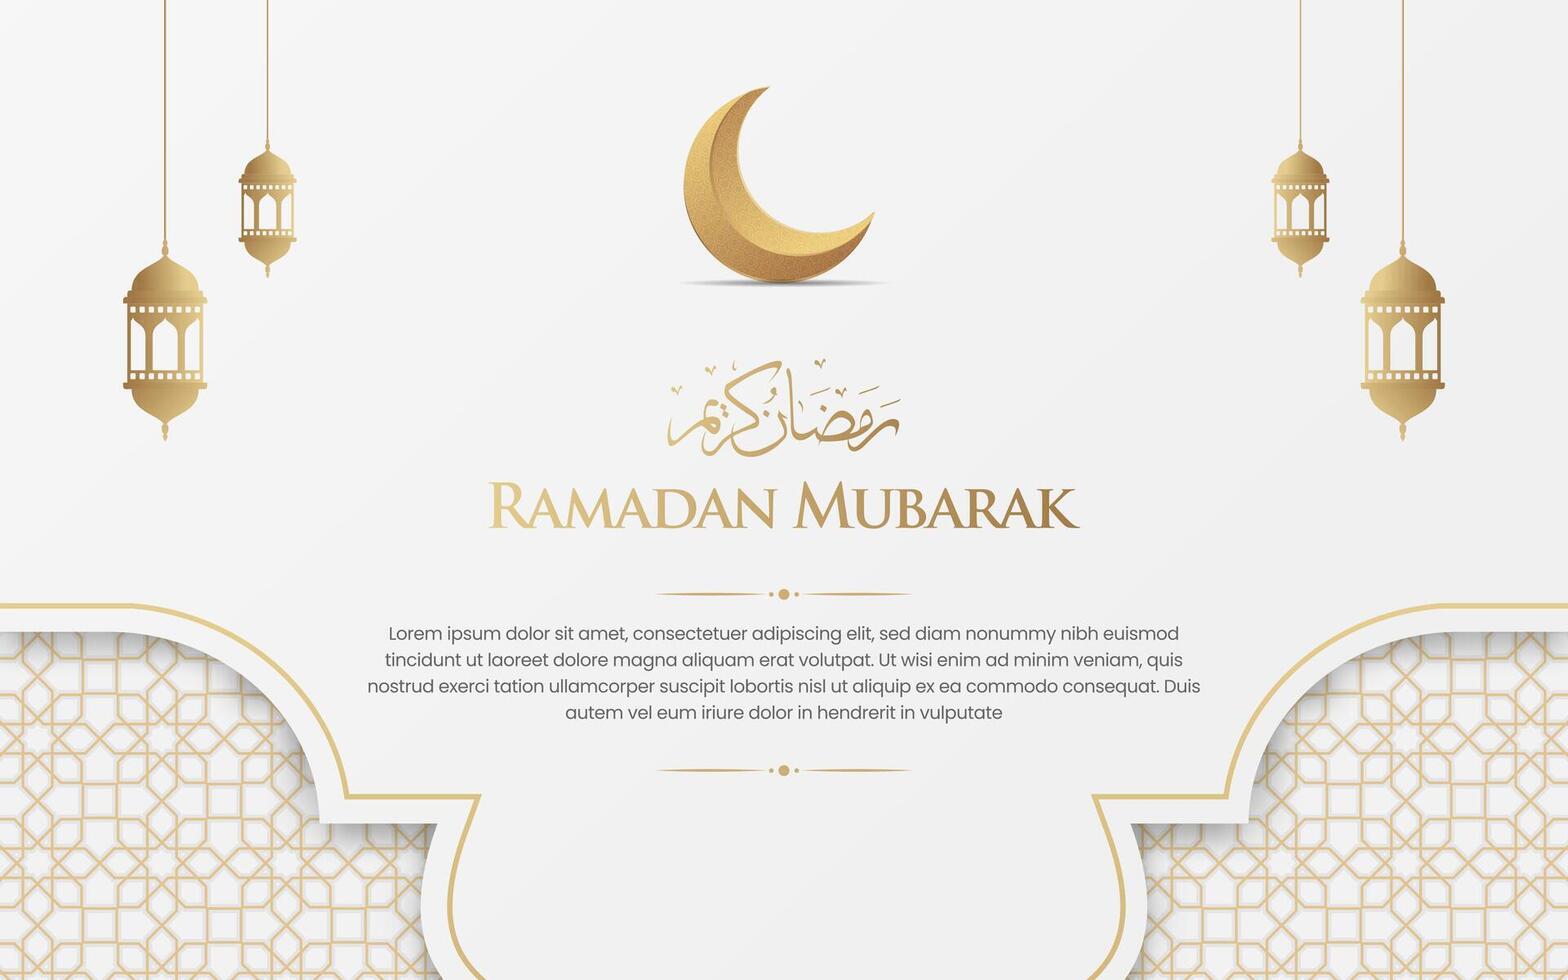 islamico Arabo bianca e d'oro lusso Ramadan sfondo con decorativo islamico arco e lanterna vettore